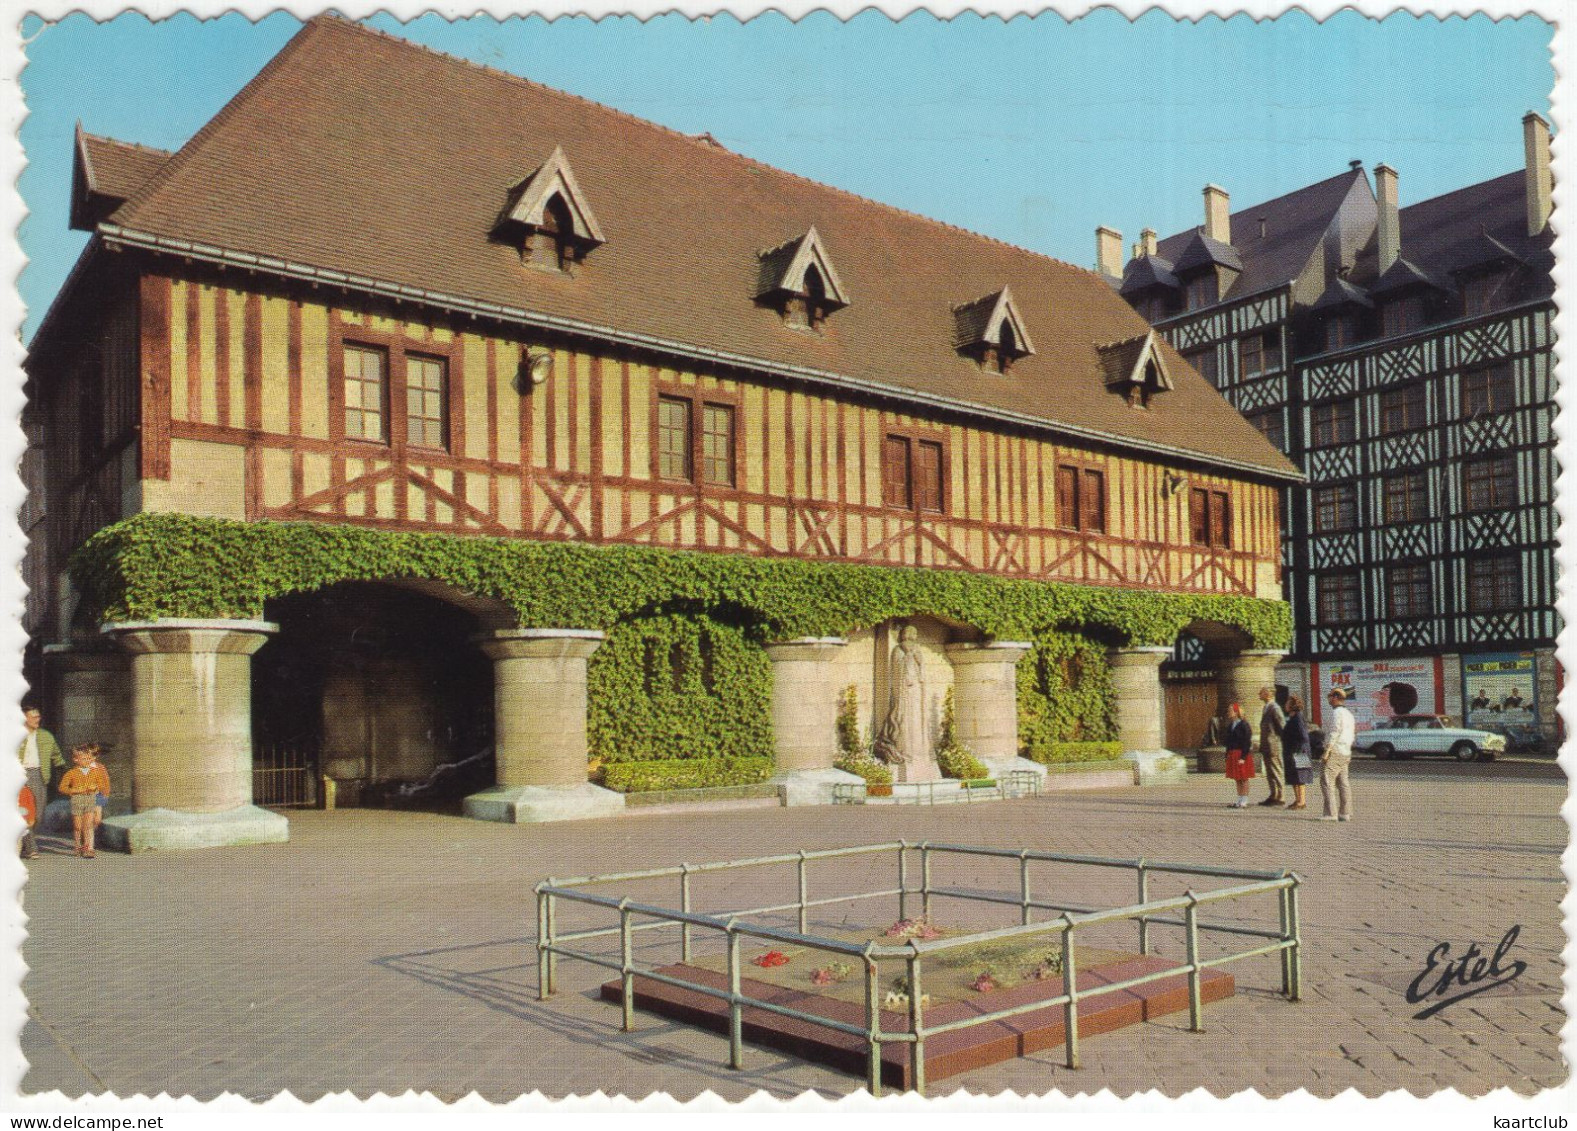 Rouen: SIMCA ARONDE P60 MONACO - La Place Du Marché, Statue Jeanne D'Arc - (France) - 1966 - Voitures De Tourisme